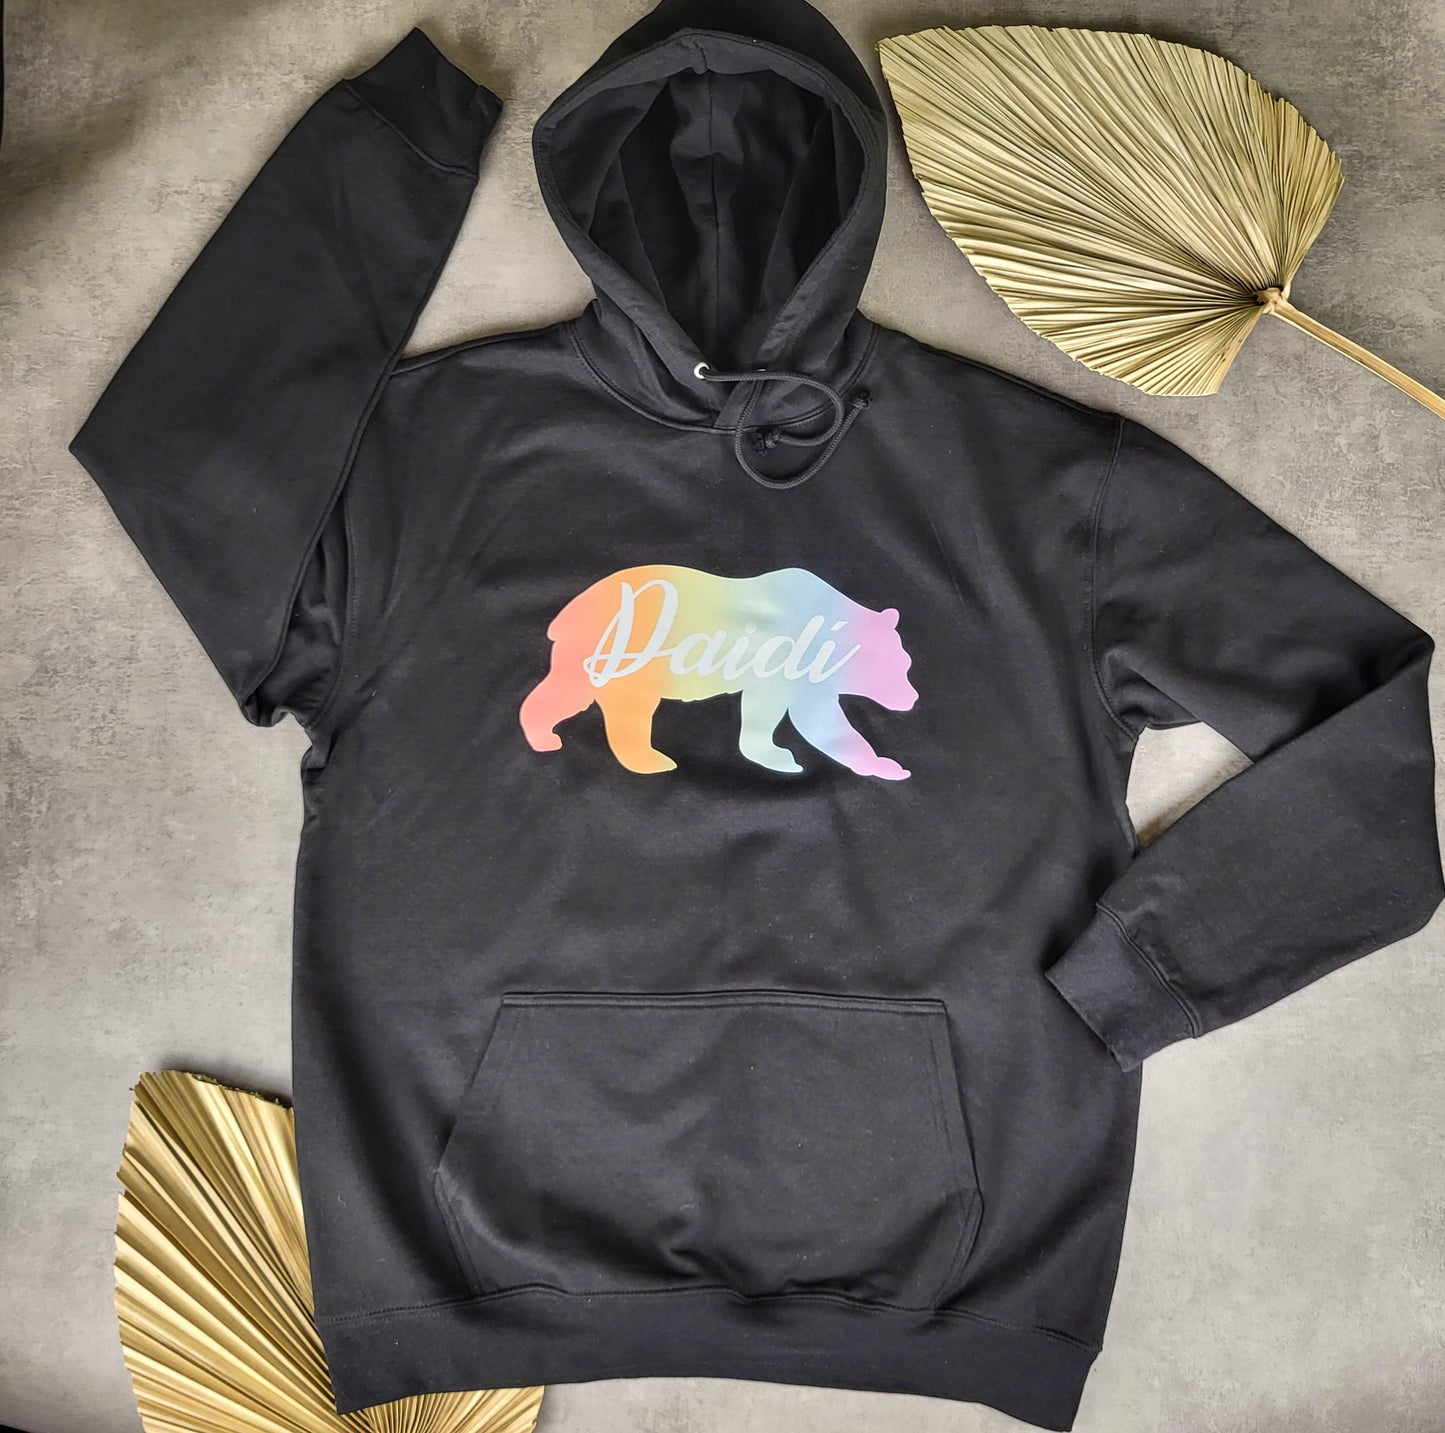 Rainbow Daidí béar hoodie